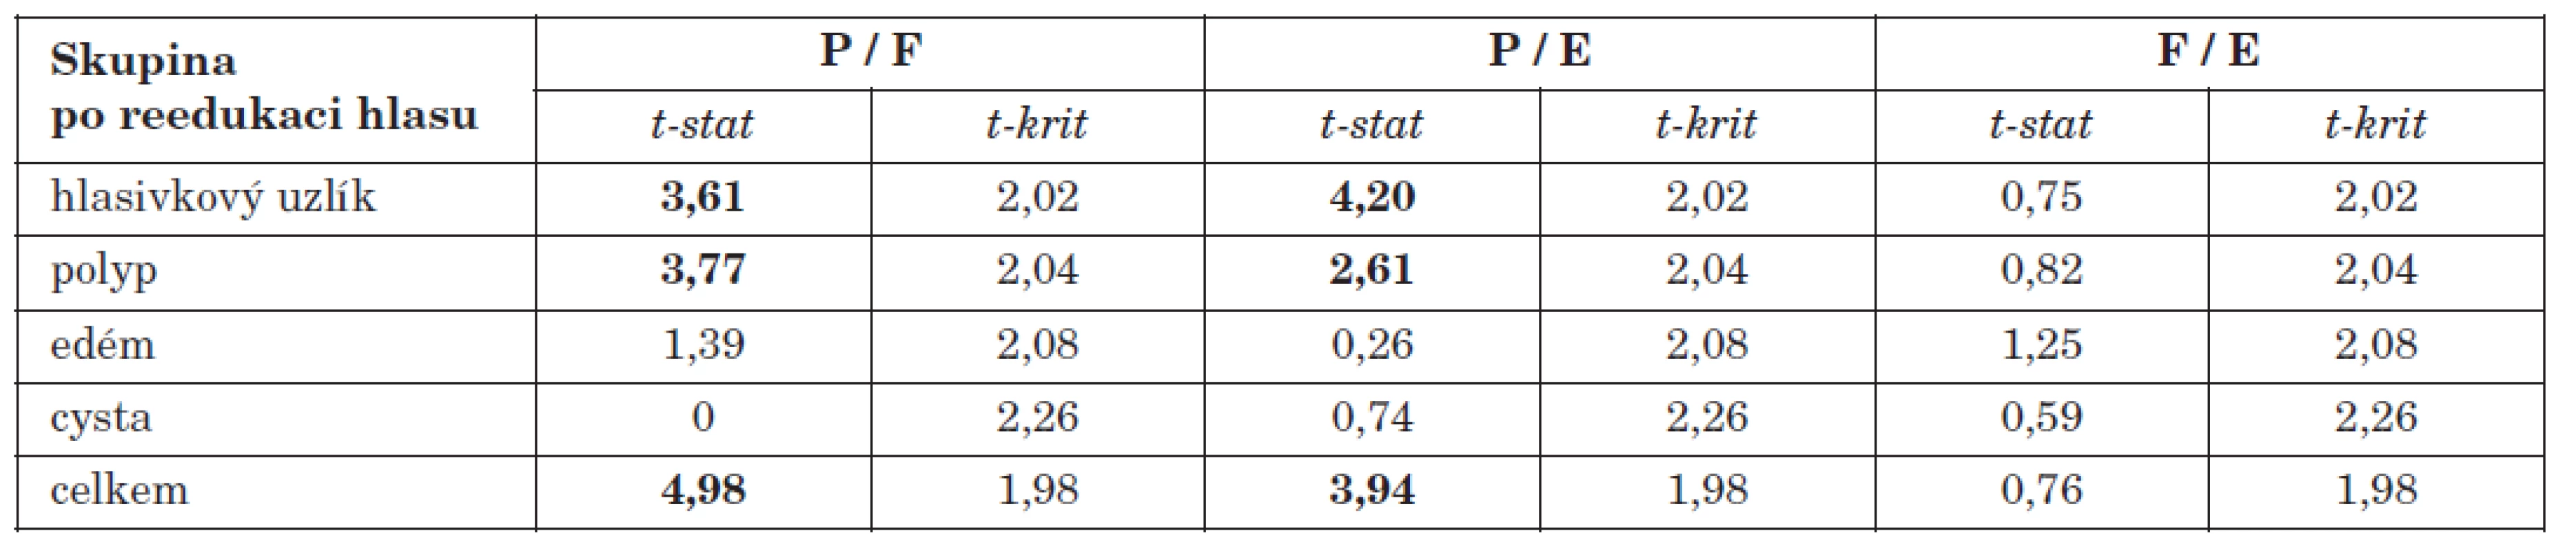 Hodnoty dvouvýběrového párového t-testu při vzájemném porovnávání jednotlivých částí dotazníku u operovaných pacientů s reedukací hlasu.